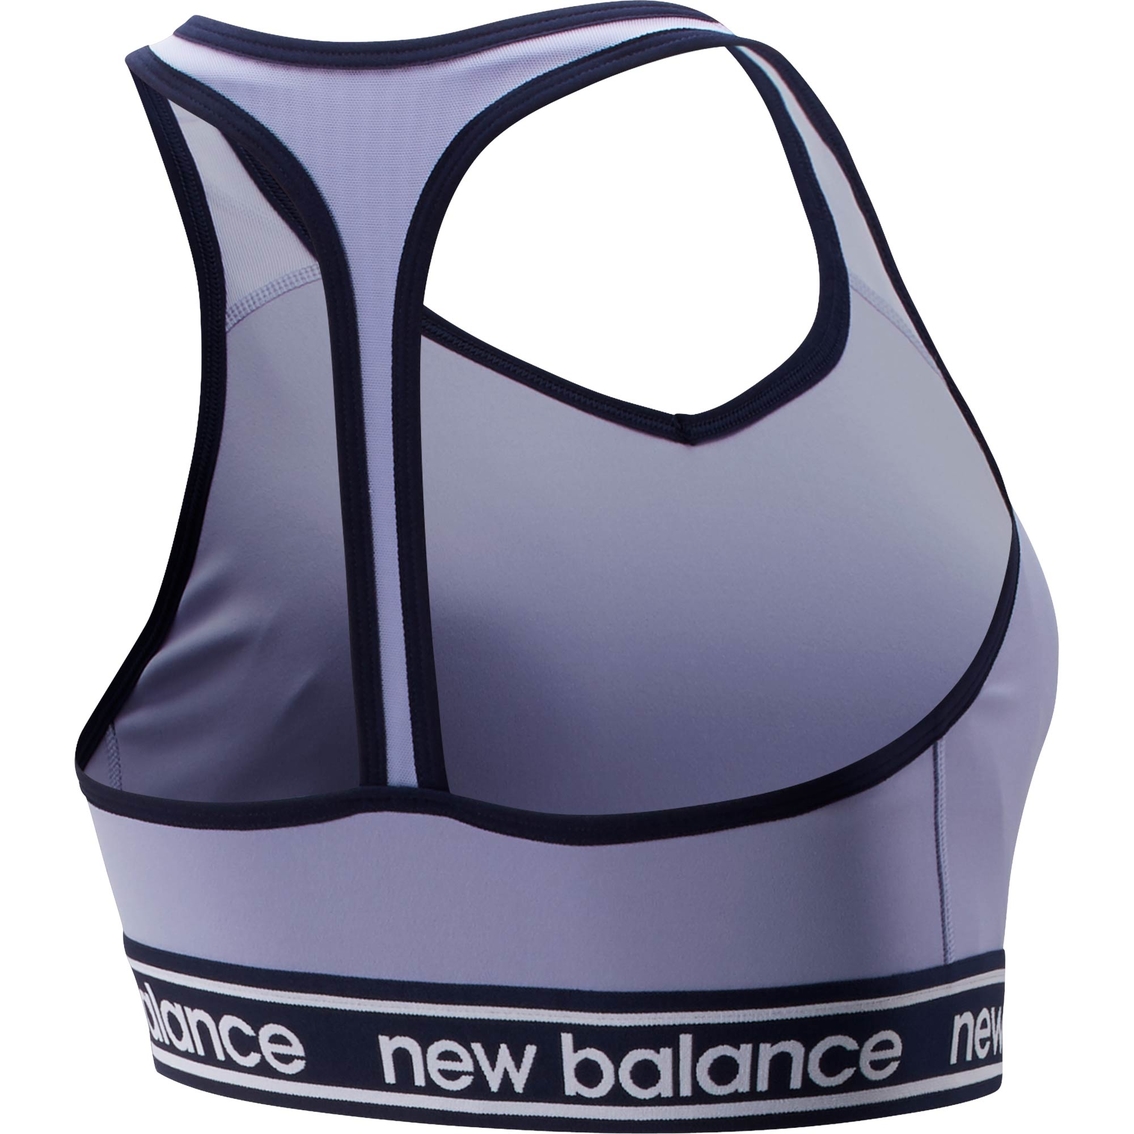 New Balance Pace Bra 2.0 - Image 2 of 2